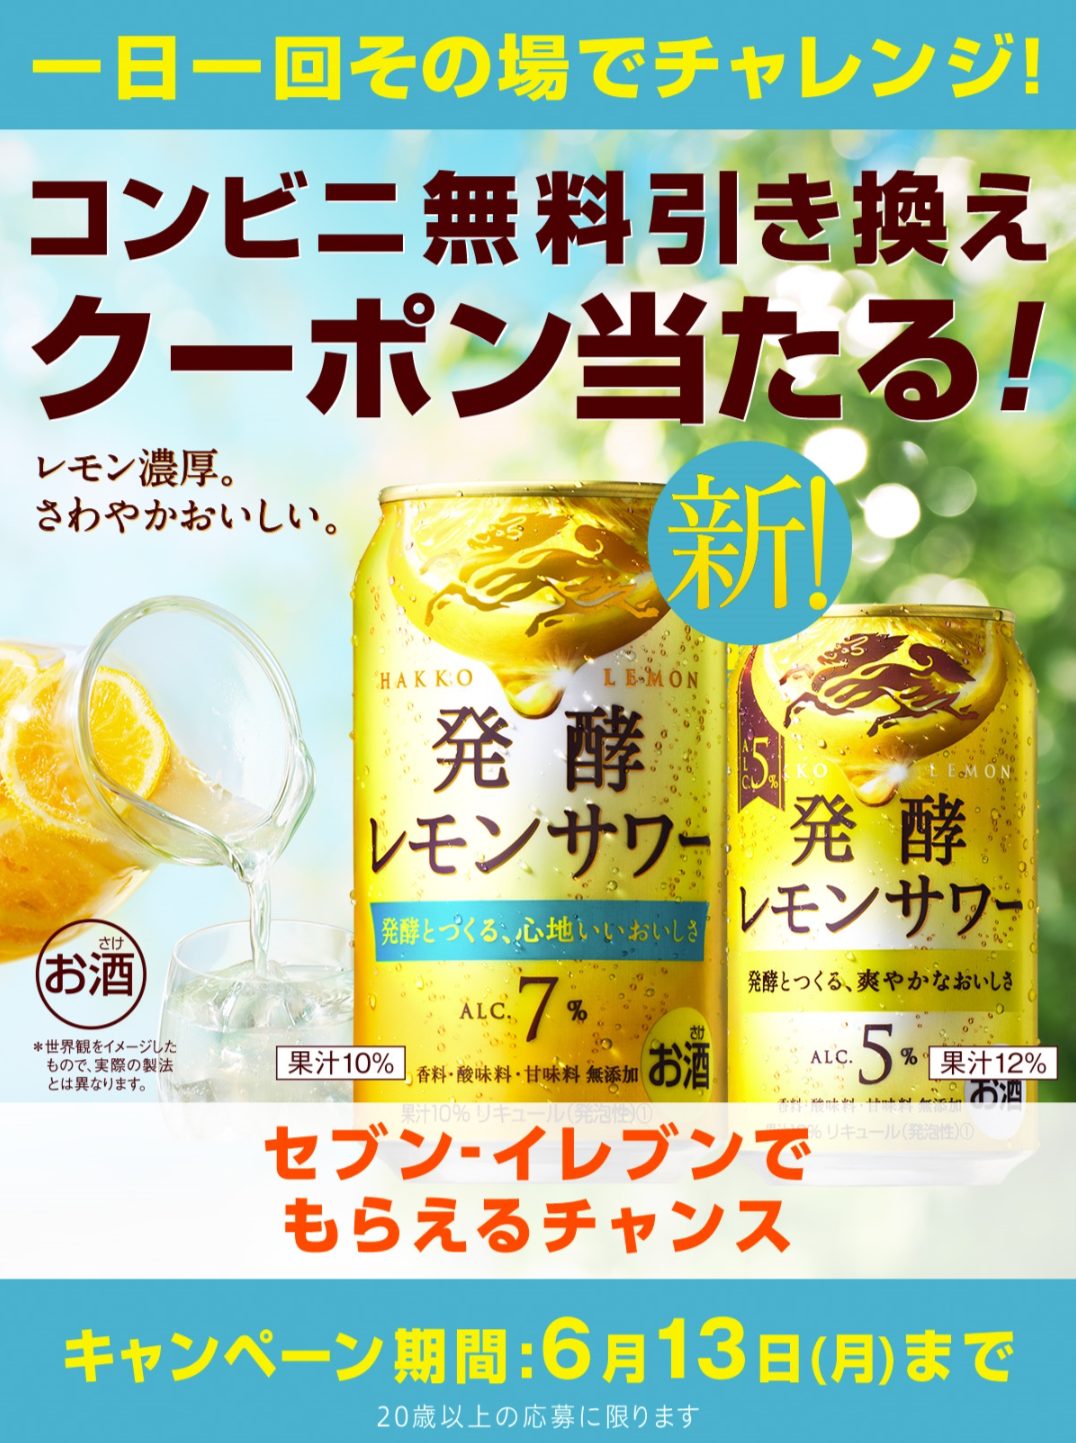 麒麟 発酵レモンサワーコンビニ無料引き換えクーポン当たる キャンペーン キャンなび Webキャンペーンまとめサイト